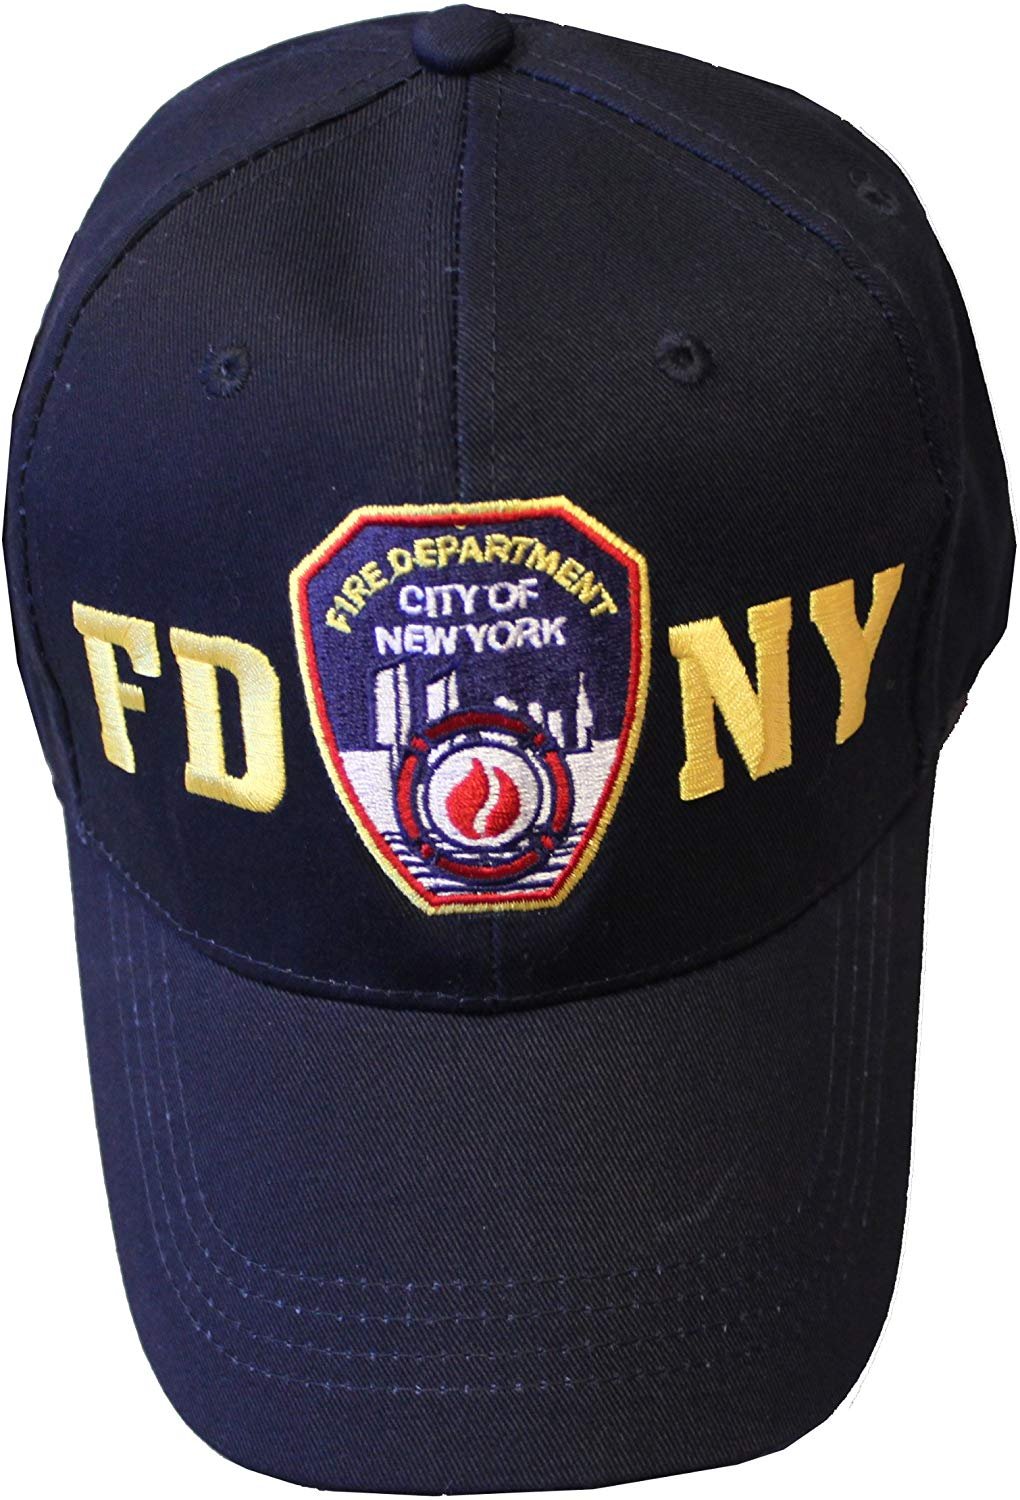 FDNY Casquette de baseball pour bébé pour bébé Fire Department of New York Bleu marine Taille unique